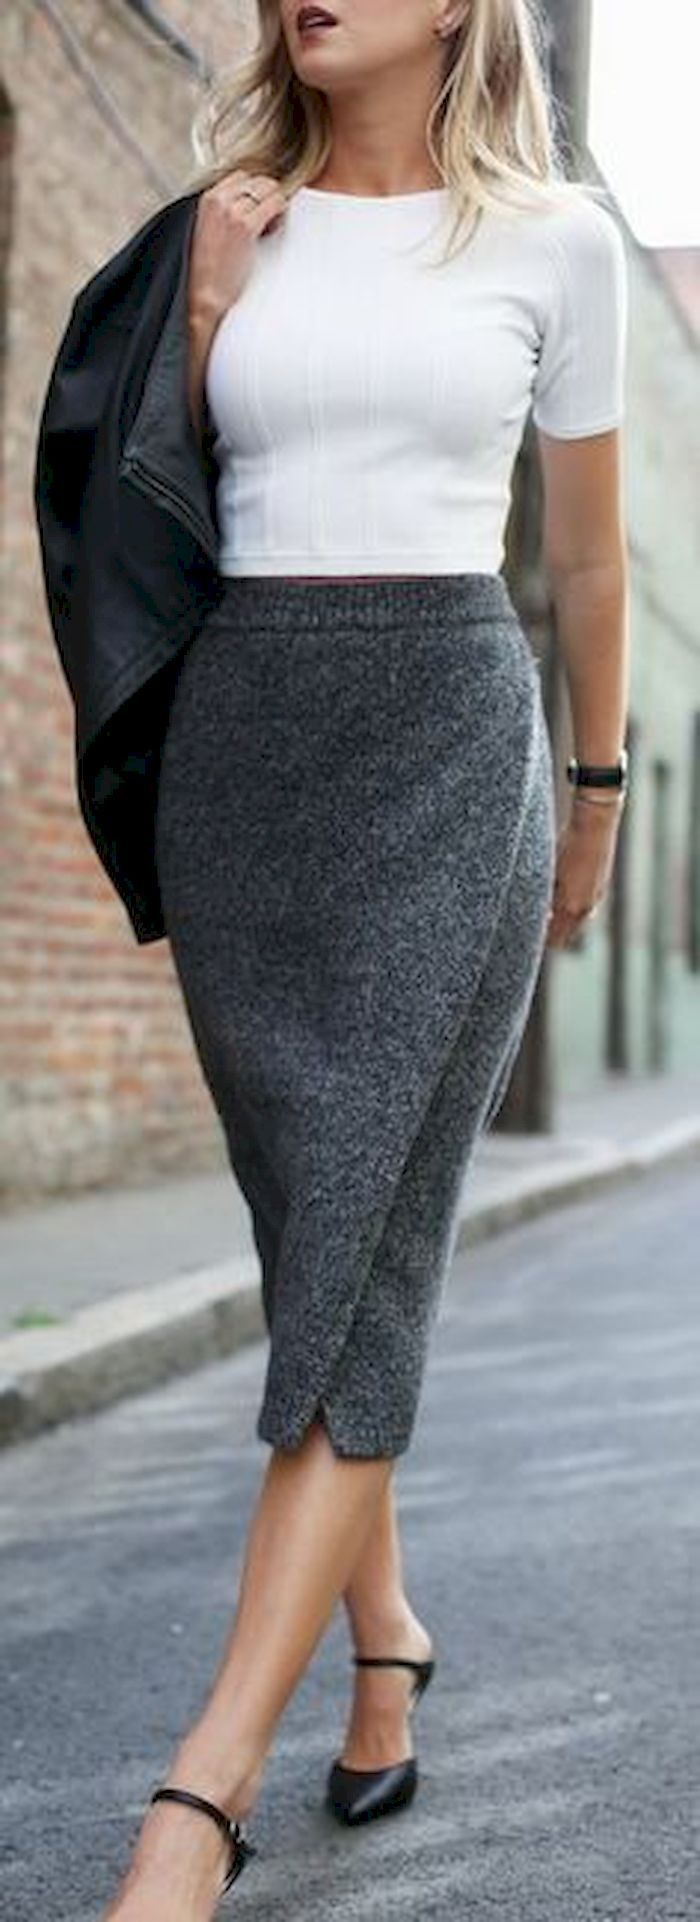 Arriba 72+ imagen gray long skirt outfit - Abzlocal.mx